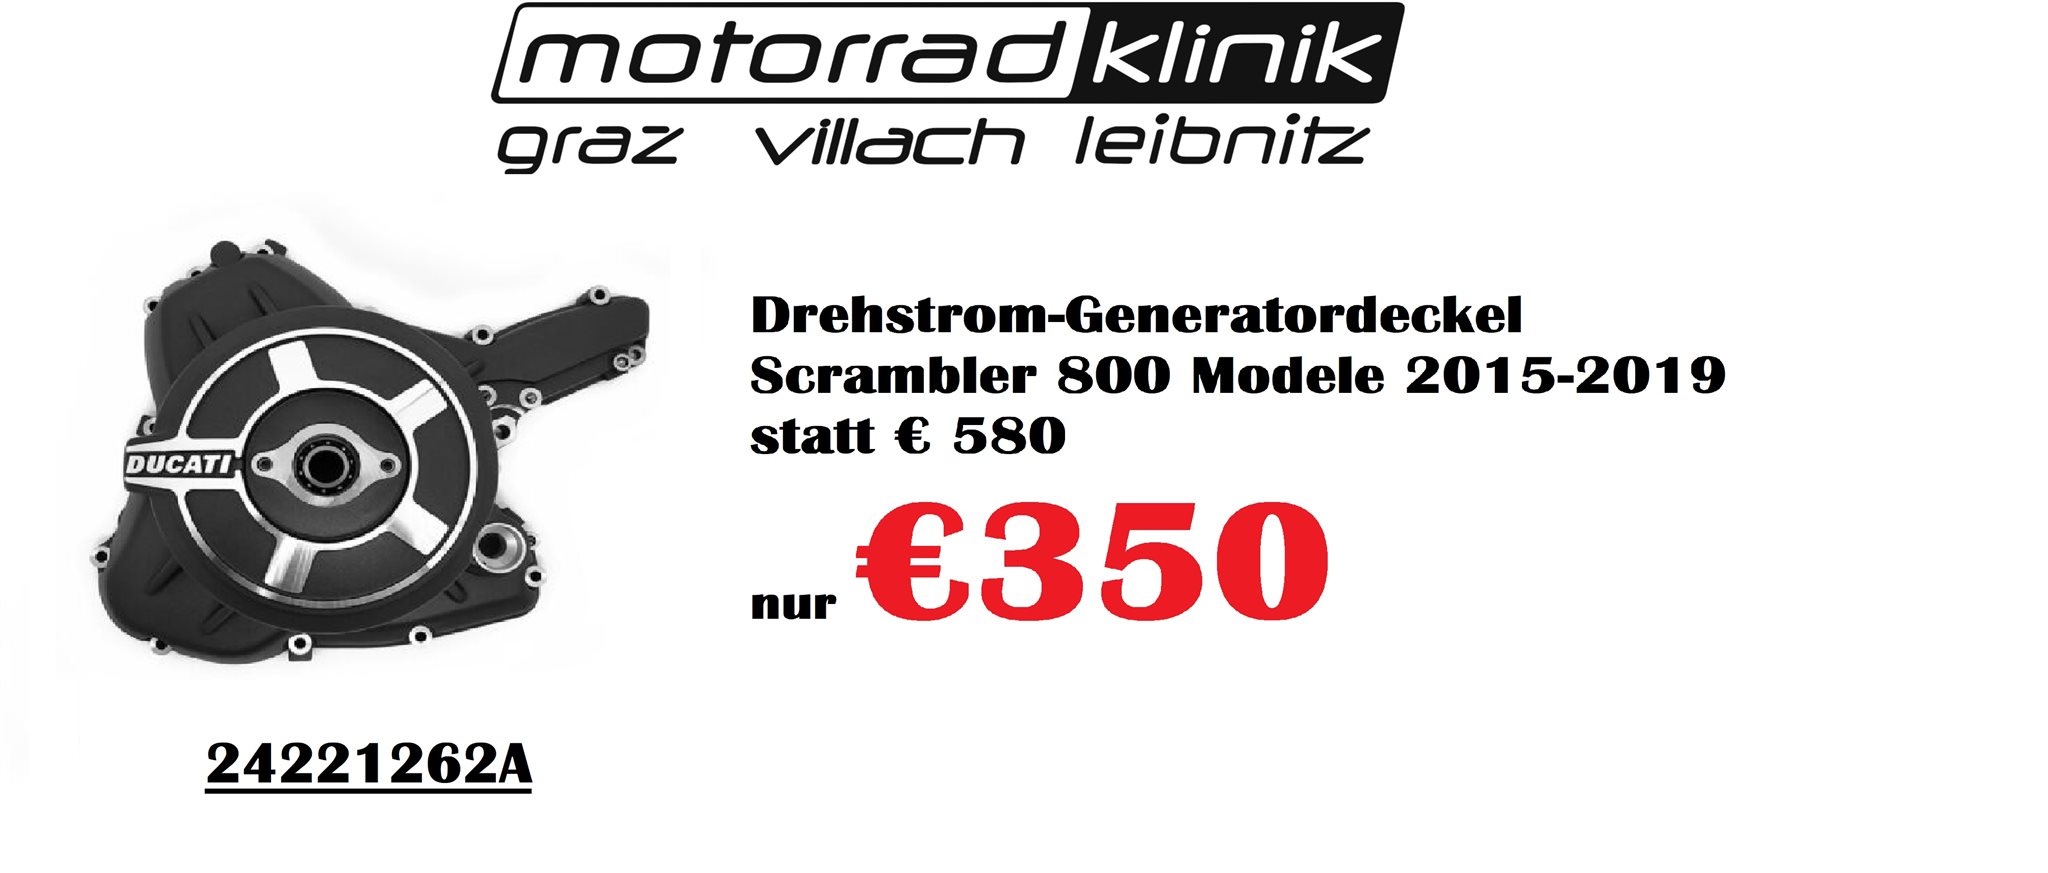 Drehstrom-Generatordeckel Scrambler 800 Modele 2015-2019 statt € 580 nur  €350 statt 580,00 EUR jetzt nur 350,00 EUR - 1000PS Shop - Sale